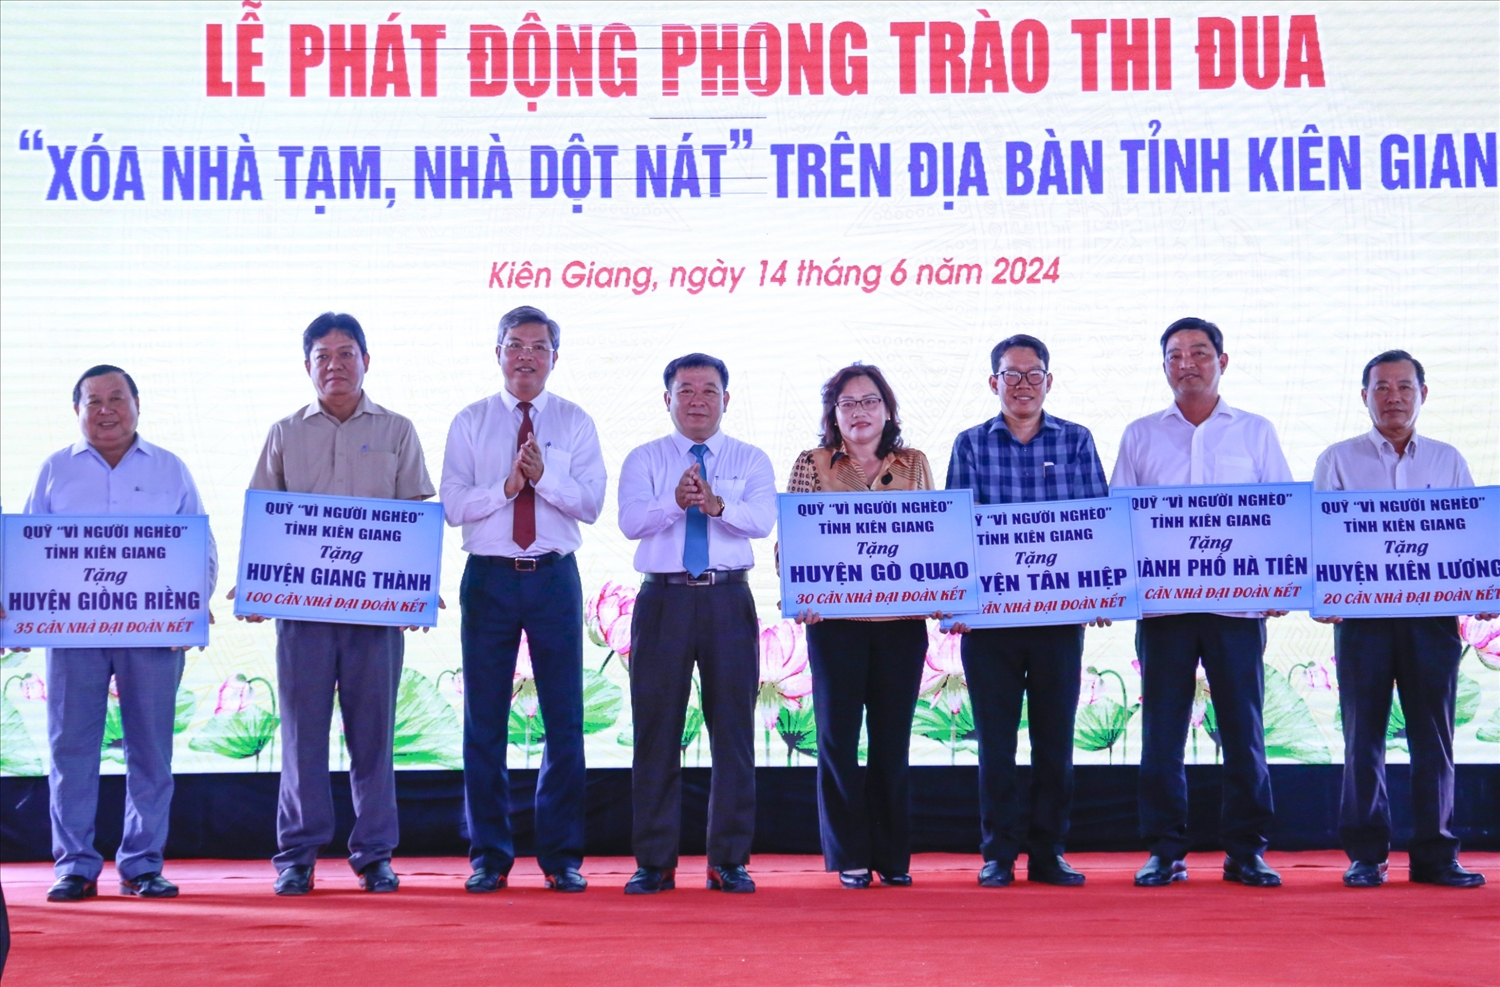 Đại diện Ban Tổ chức trao bảng tượng trưng phân bổ nhà đến các huyện, thị và thành phố của tỉnh Kiên Giang 